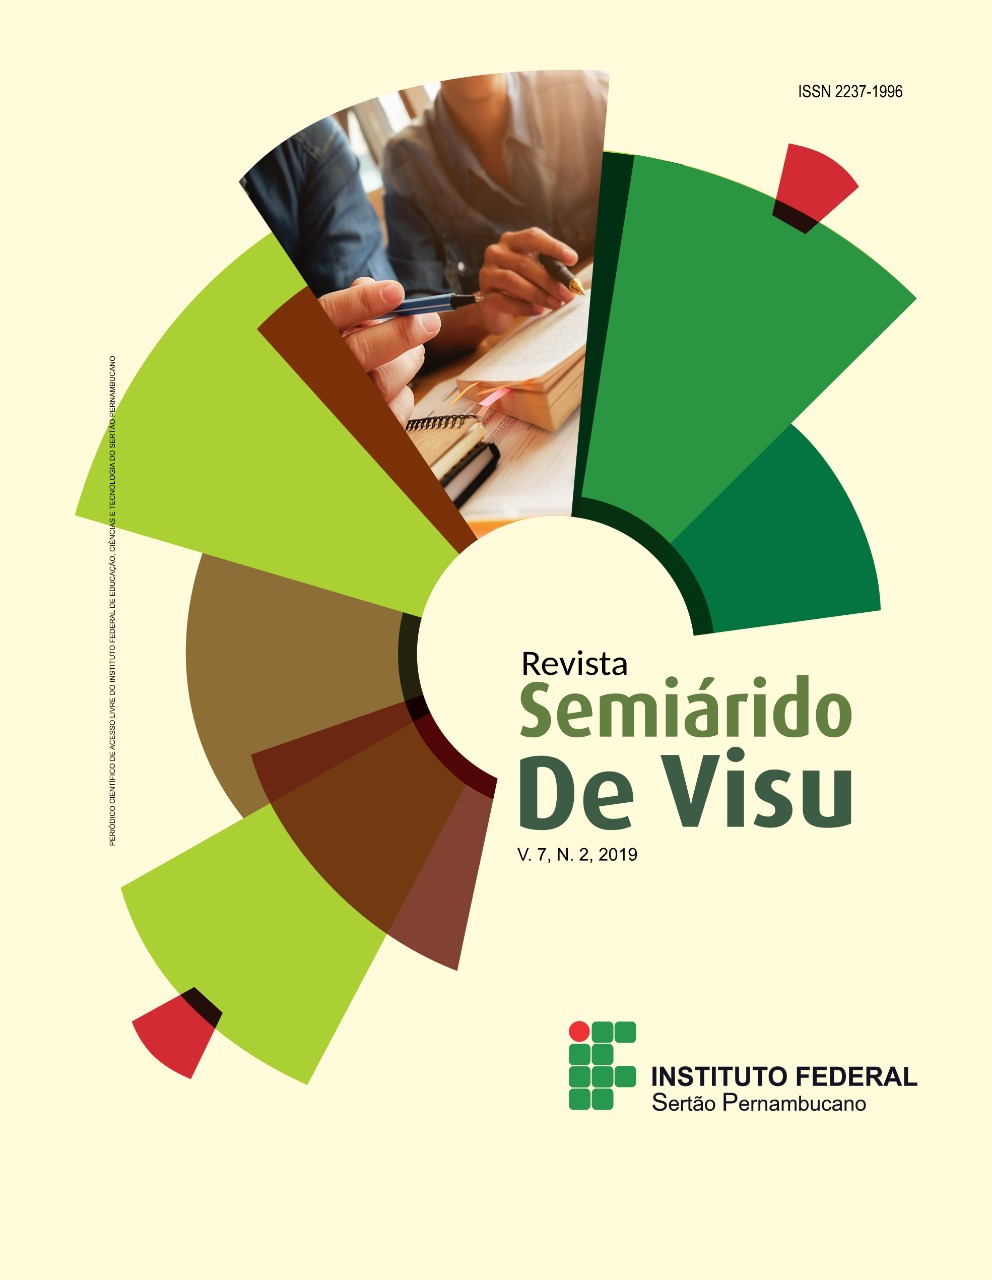 					Visualizar v. 7 n. 2 (2019): Revista Semiárido De Visu - v. 7, n. 2, 2019
				